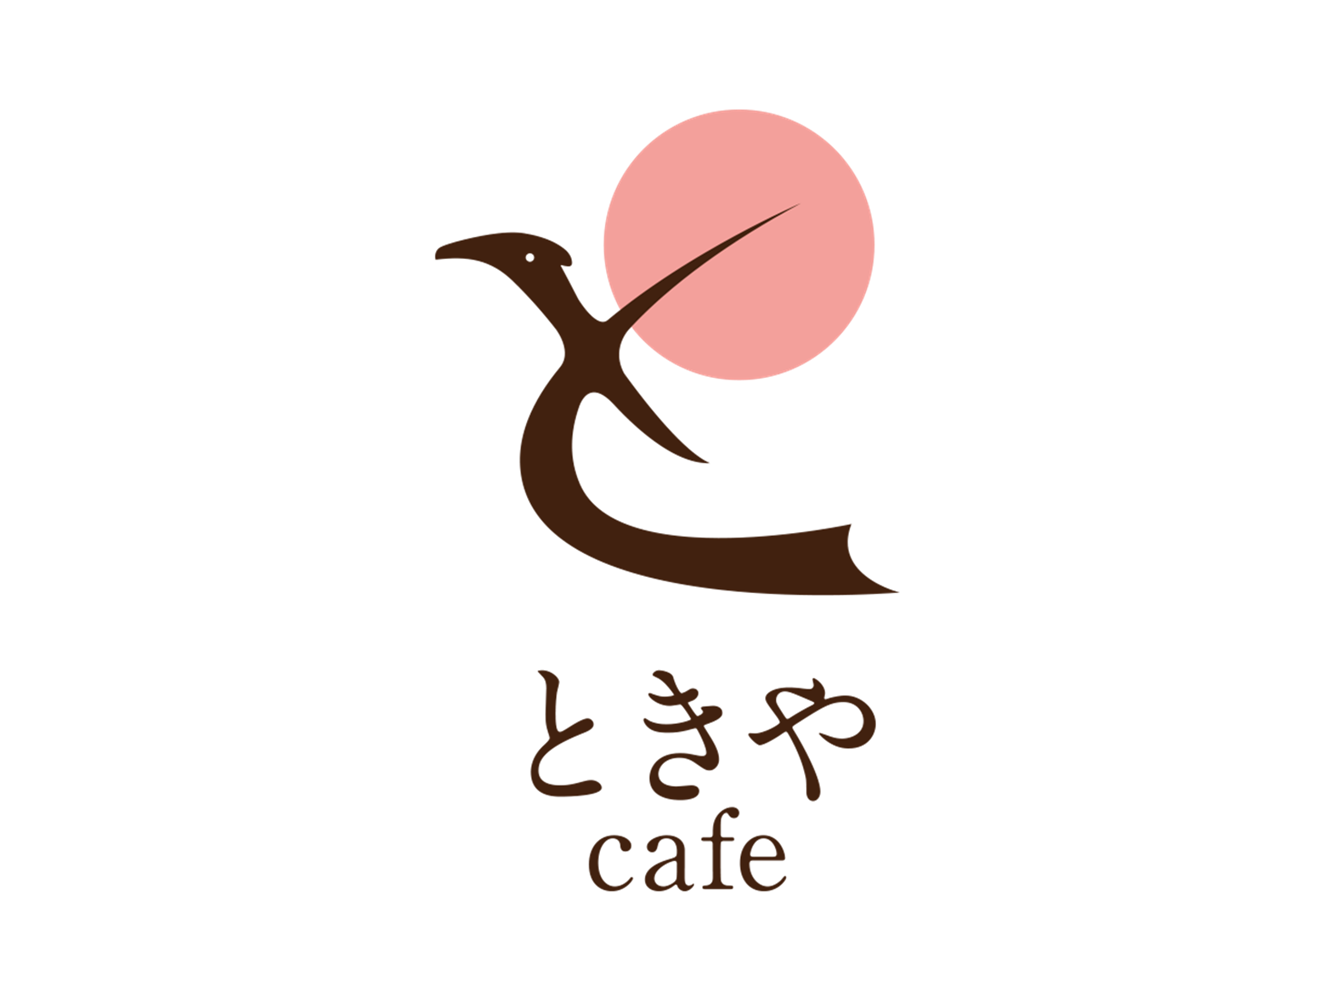 「ときやcafe」ロゴマーク・コーヒーチケット・コースター